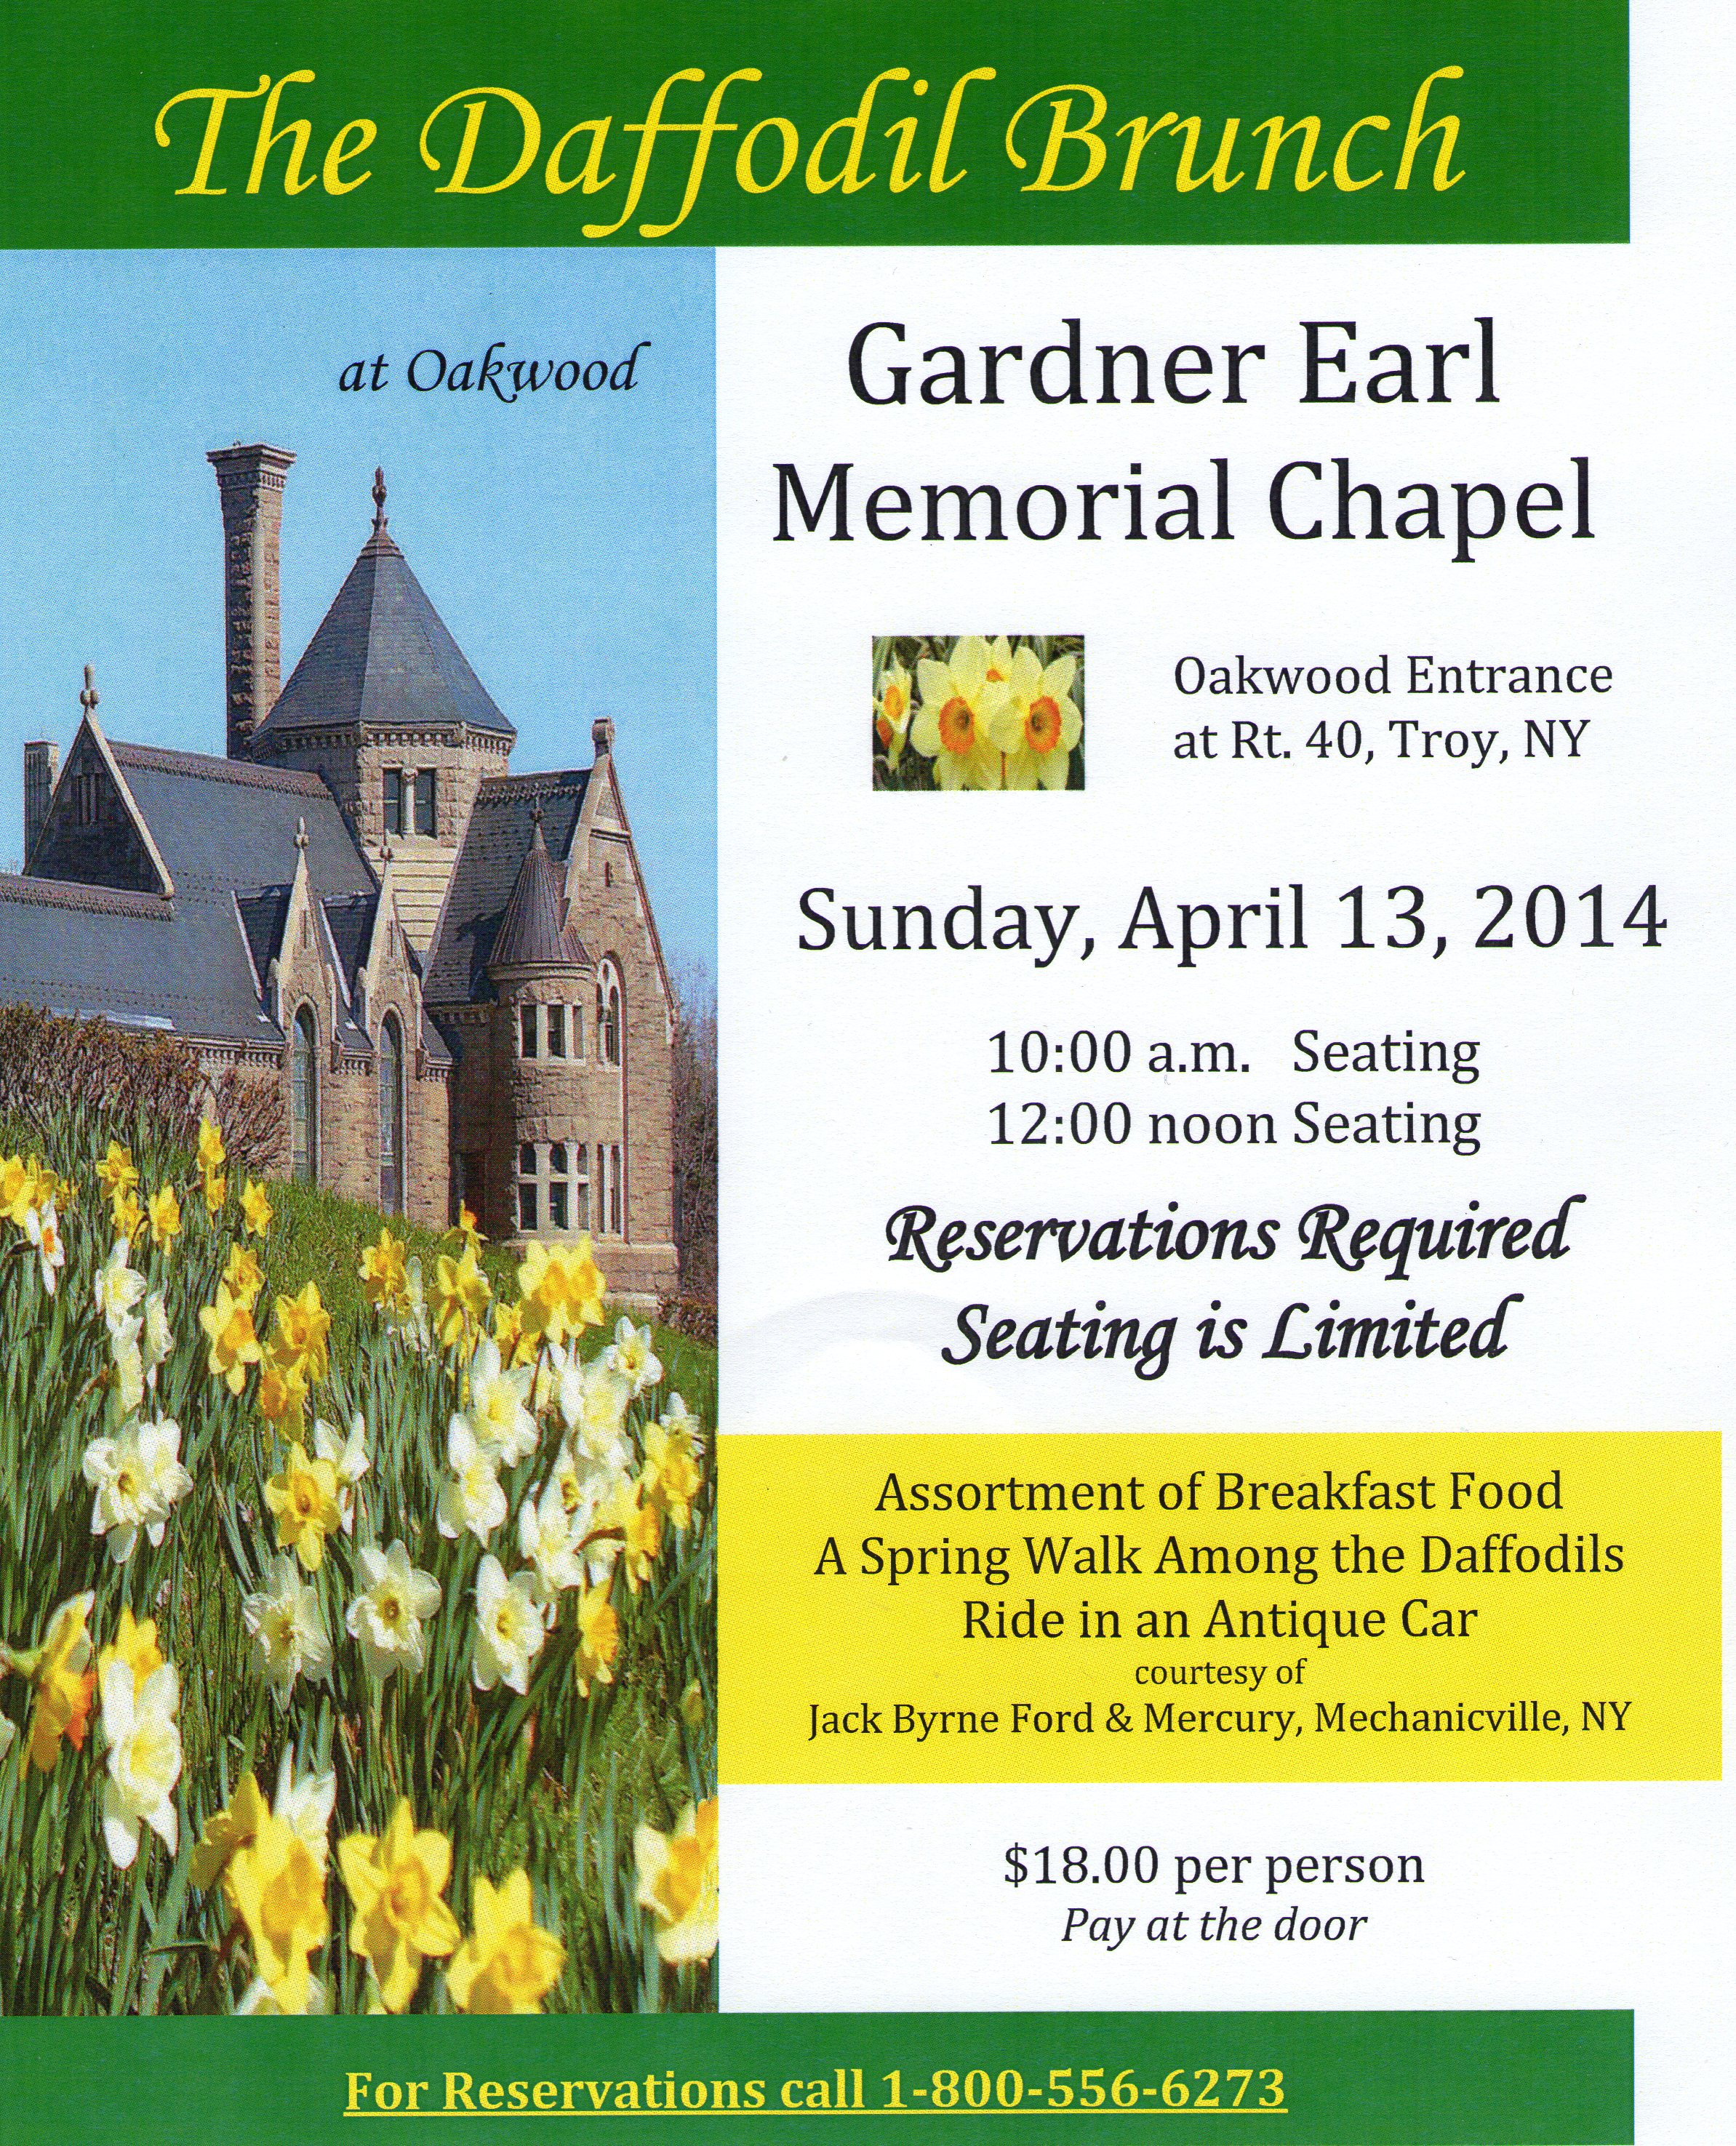 The Daffodil Brunch at Gardner Earl Memorial Chapel